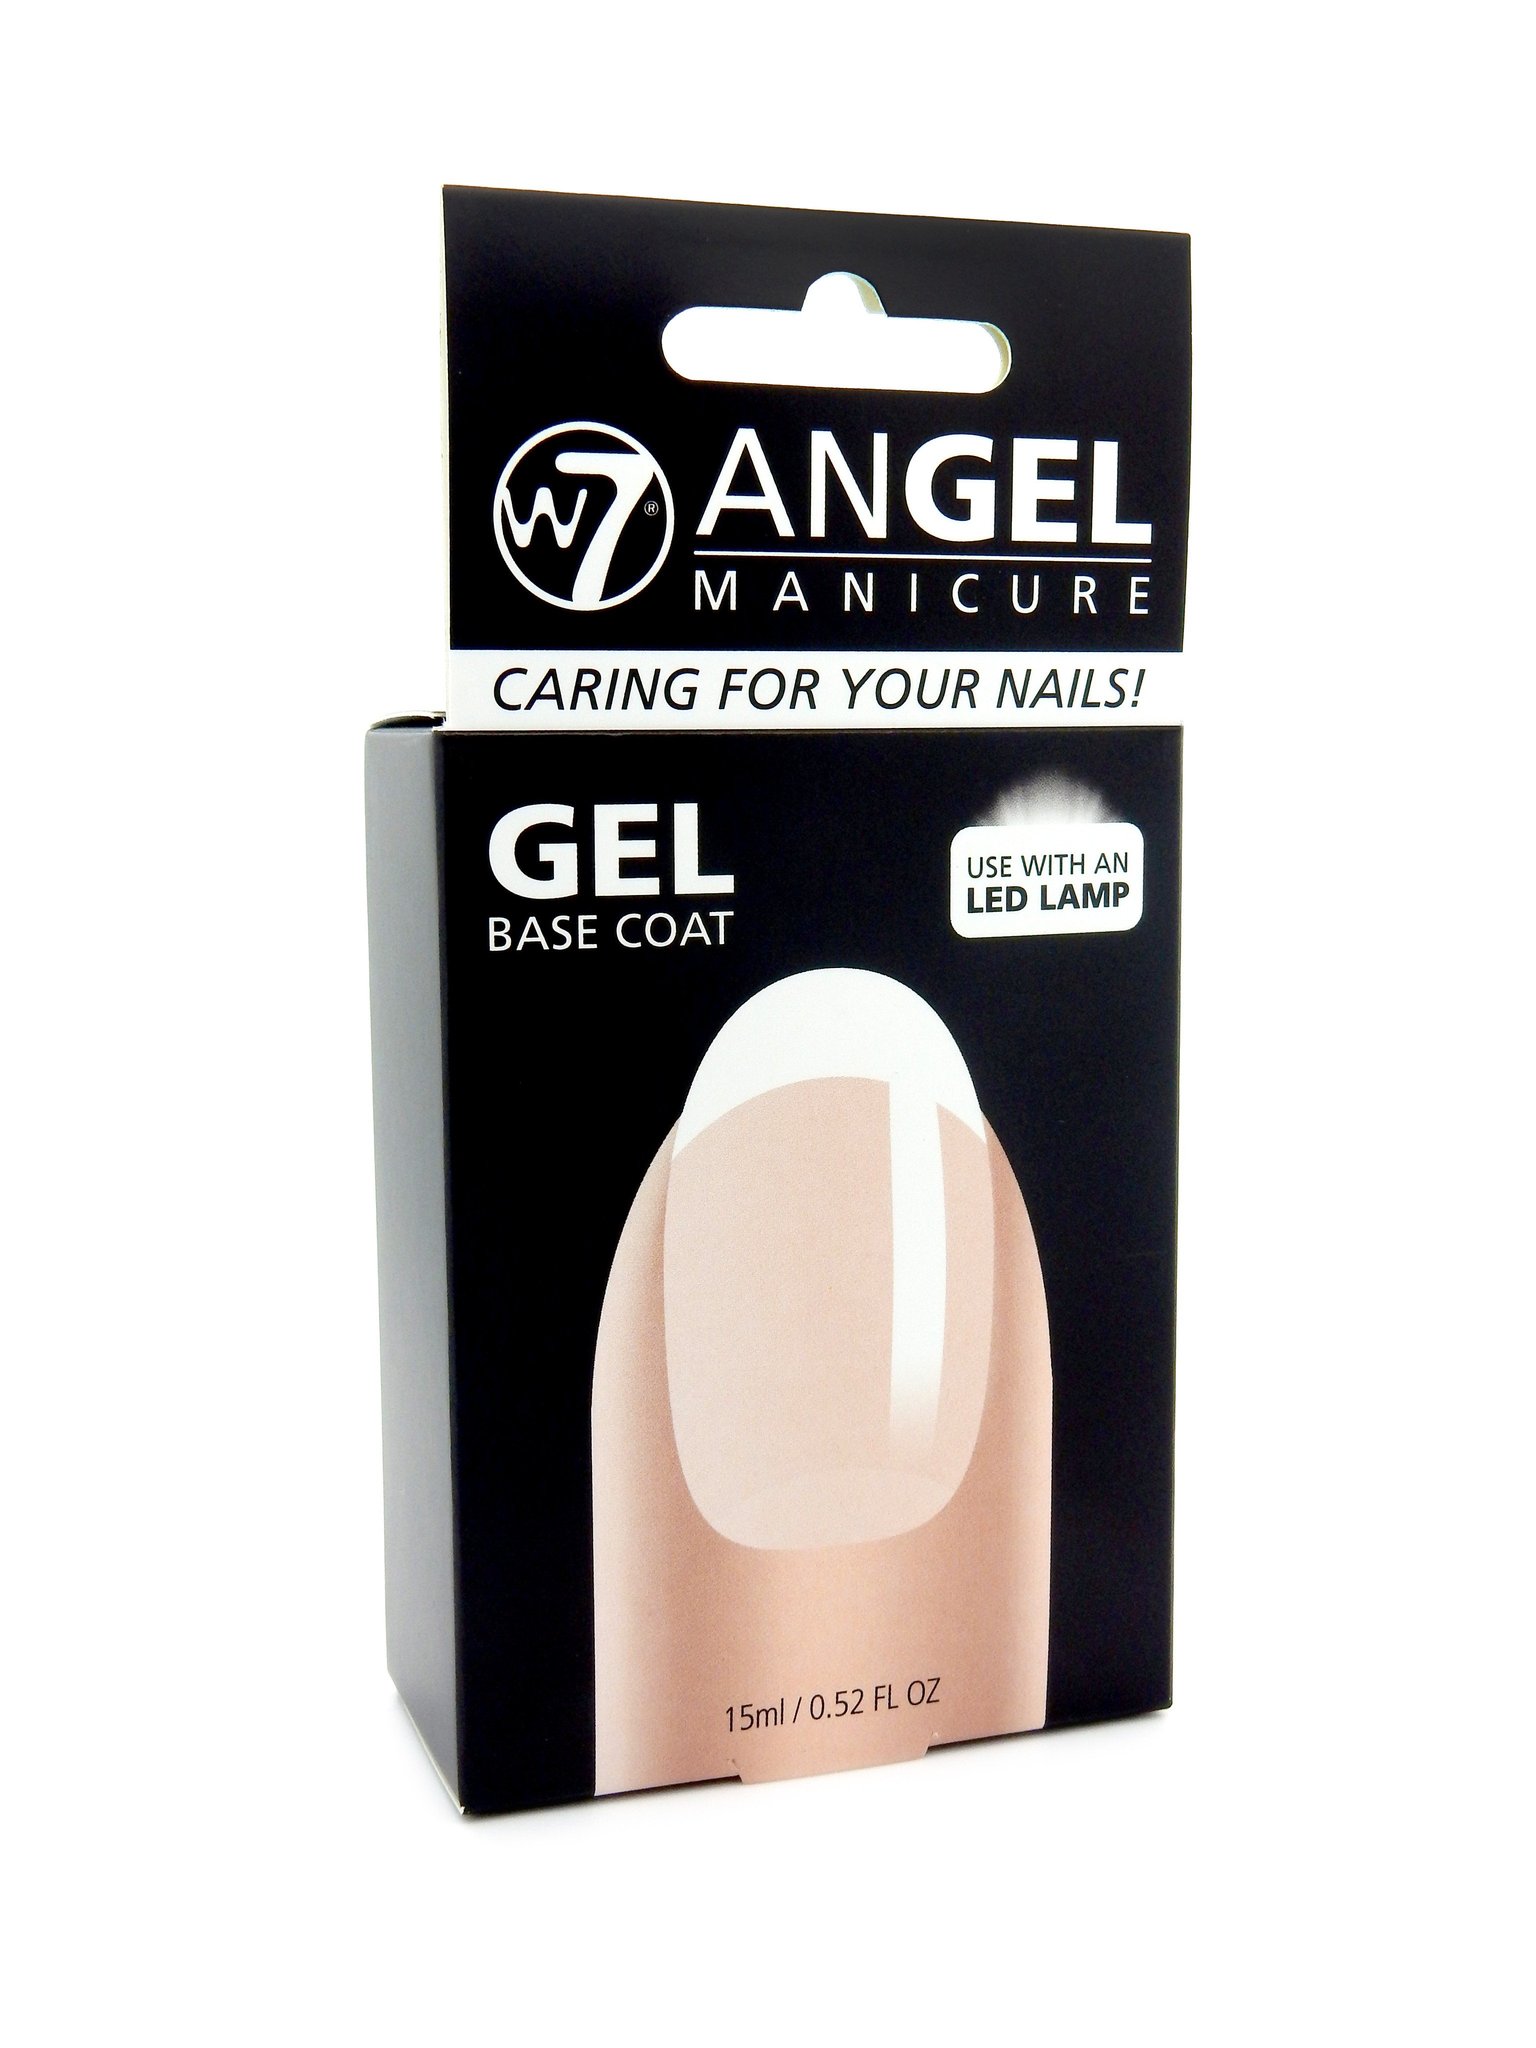 W7 Angel Manicure - Gel Base Coat